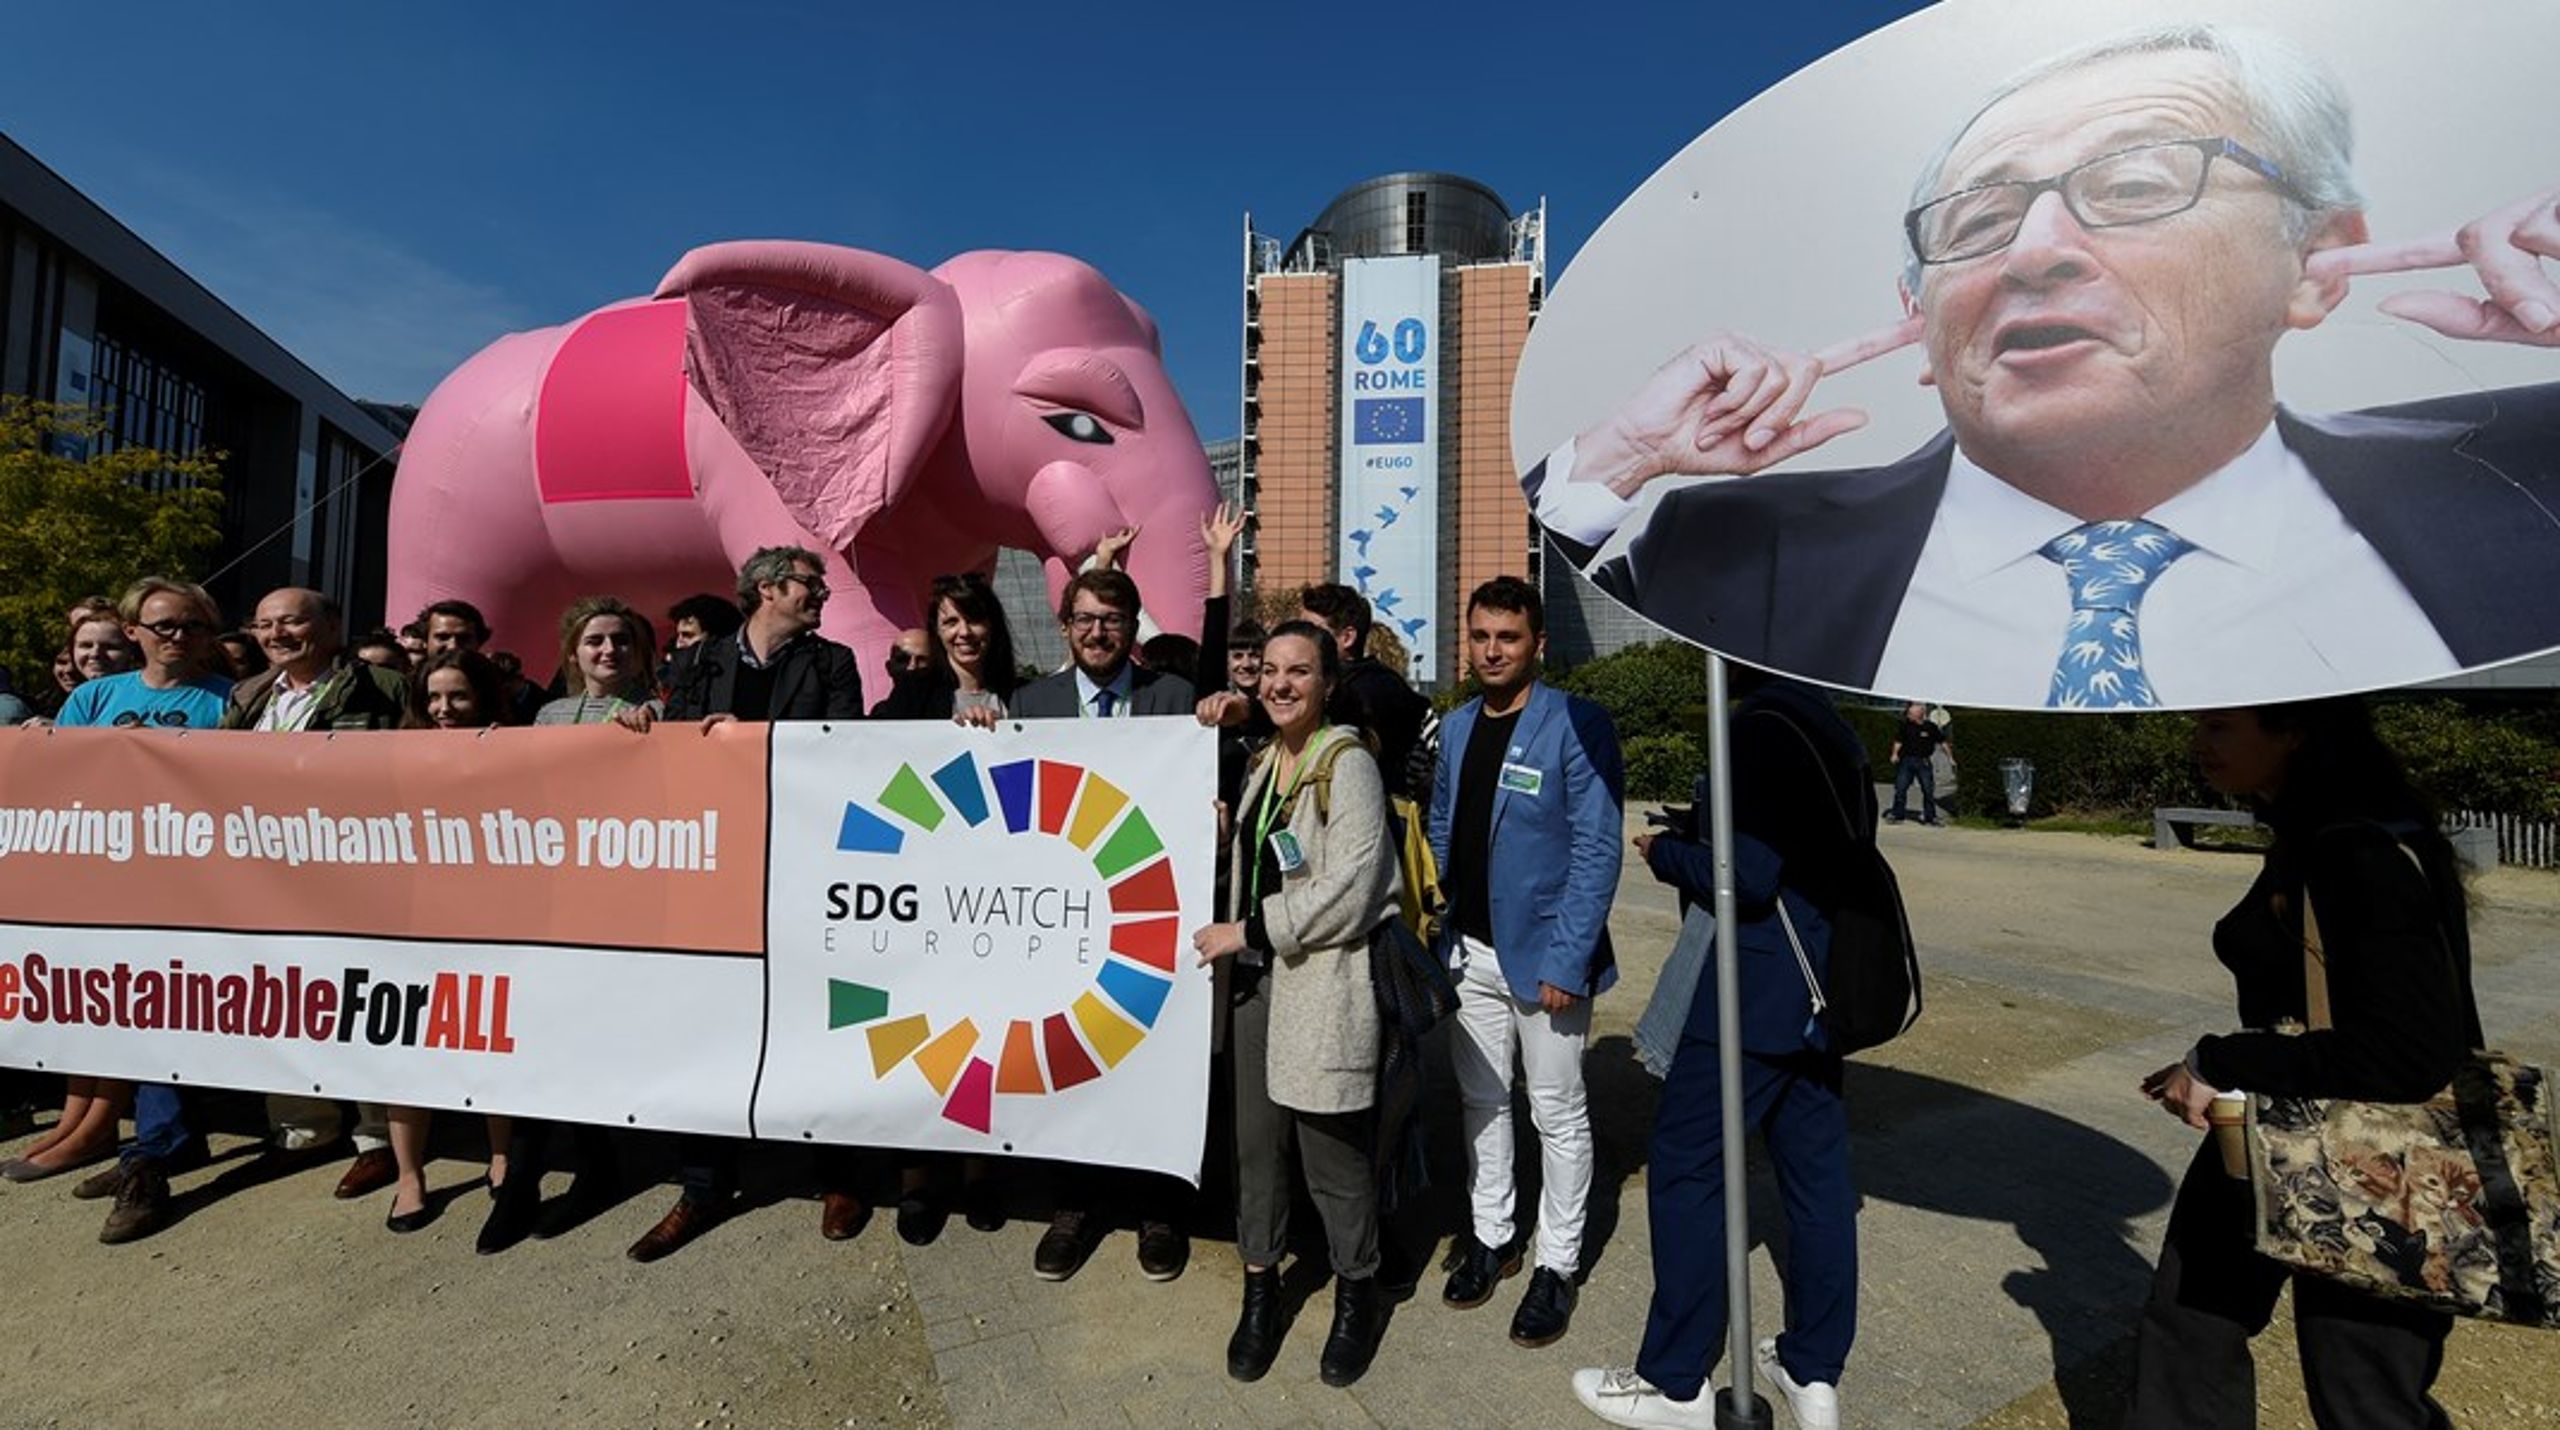 "Hold op med at ignorere elefanten i rummet!" lød budskabet fra NGO-alliancen SDG Watch&nbsp;til den daværende kommissionsformand,&nbsp;Jean-Claude Juncker, som gruppen mente ignorerede bæredygtighed hensyn.&nbsp;